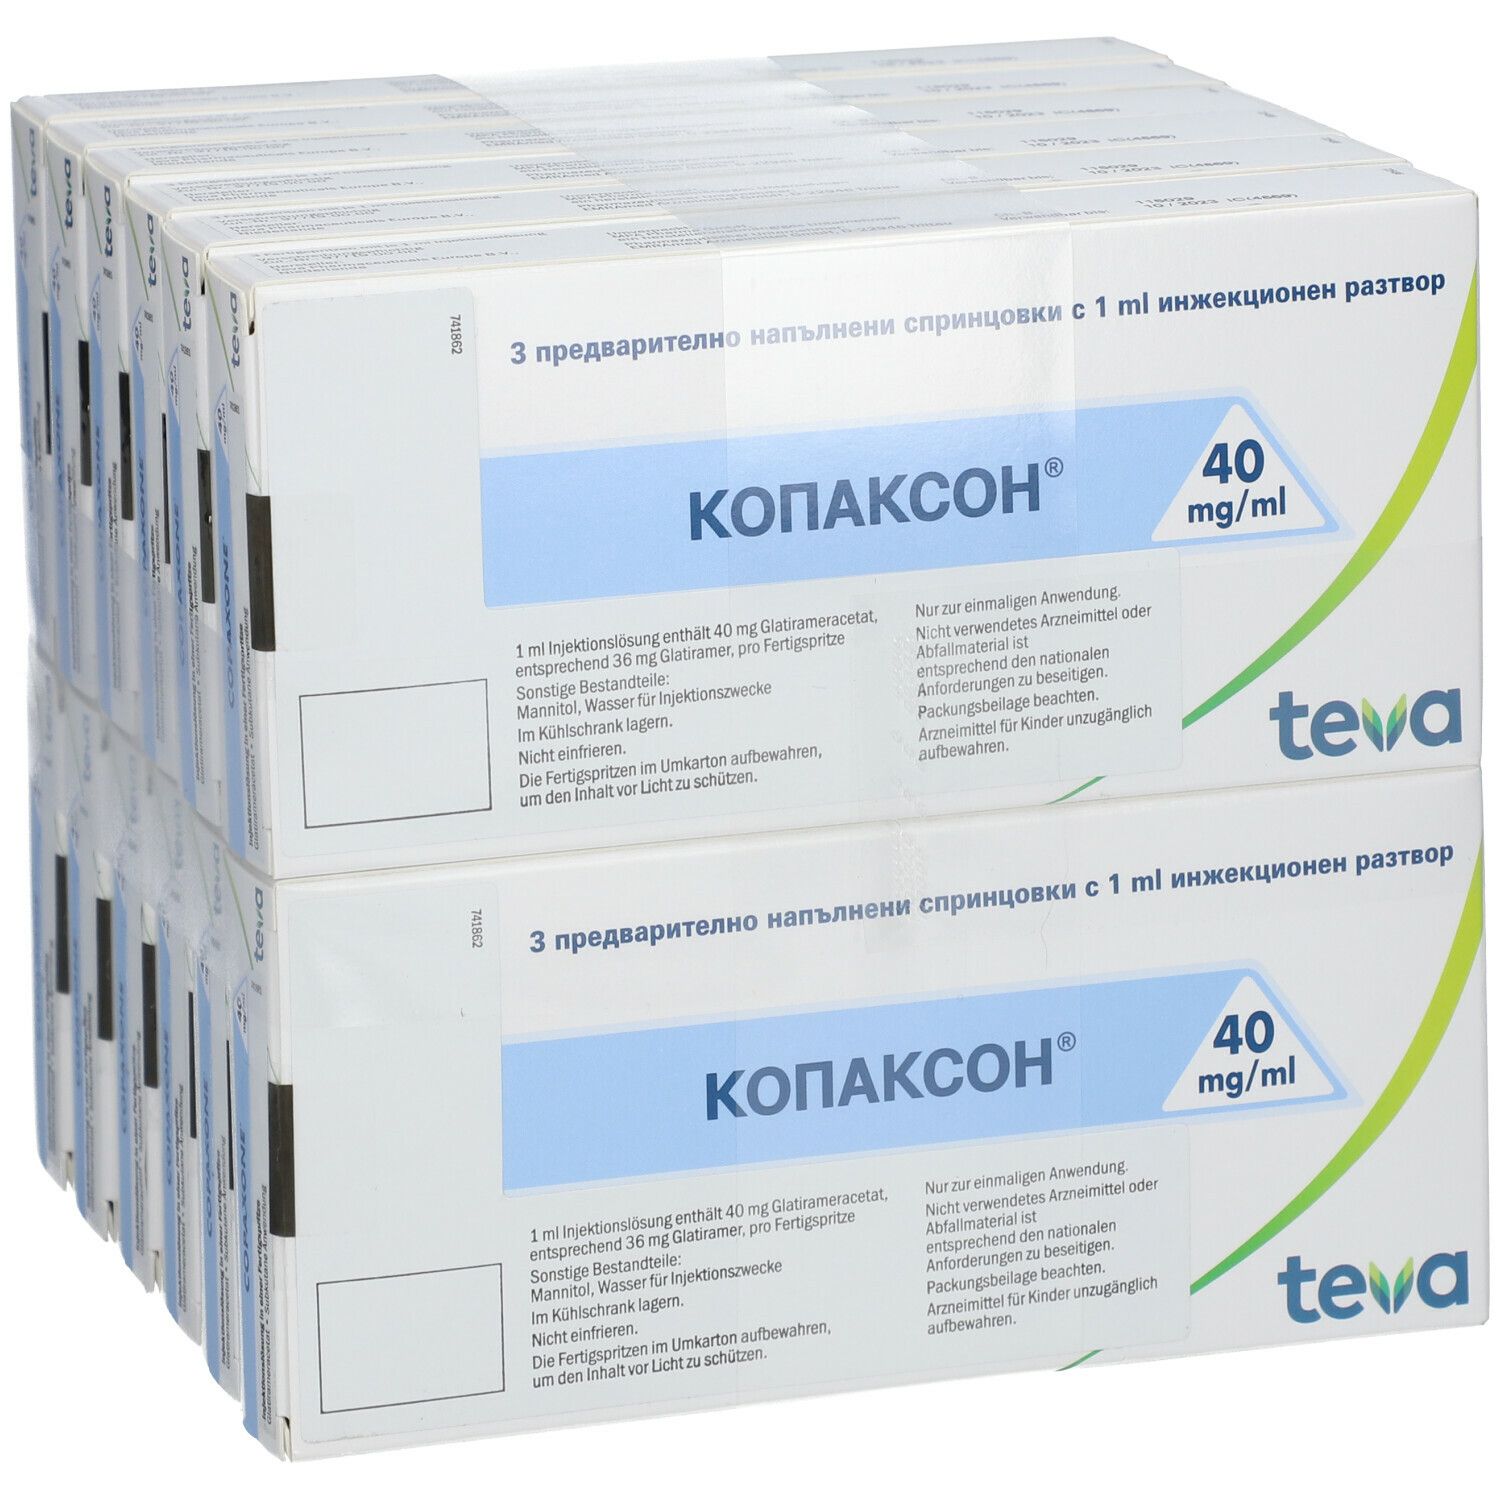 Copaxone 40 mg/ml